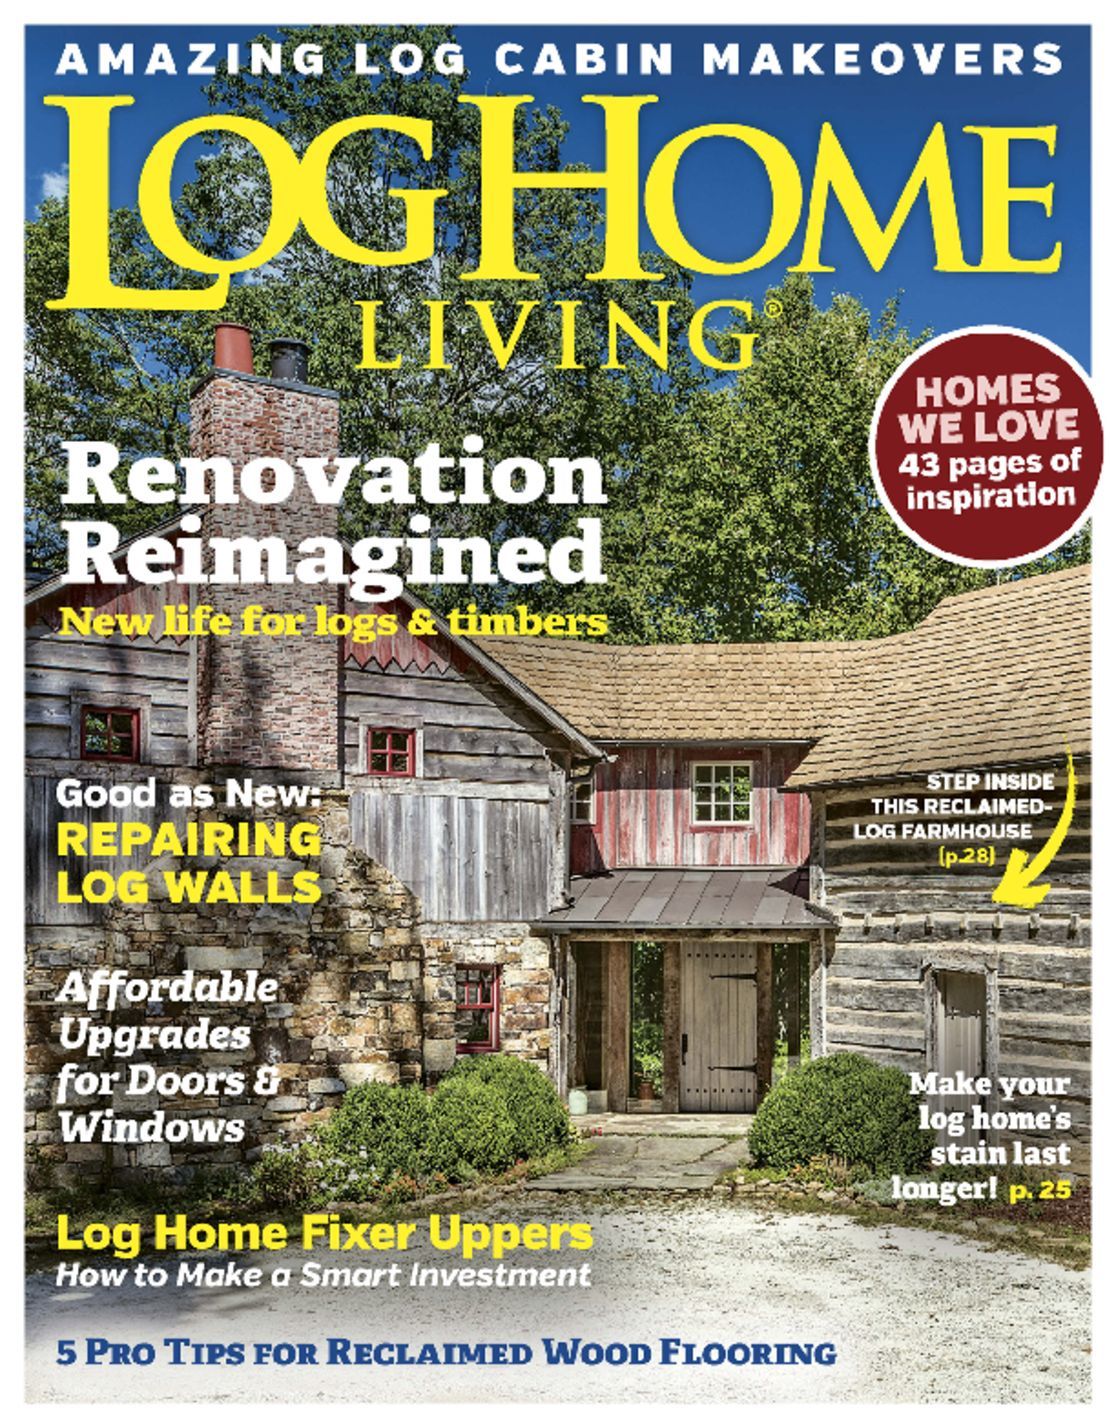 4916 Log Home Living Cover 2017 September 1 Issue 